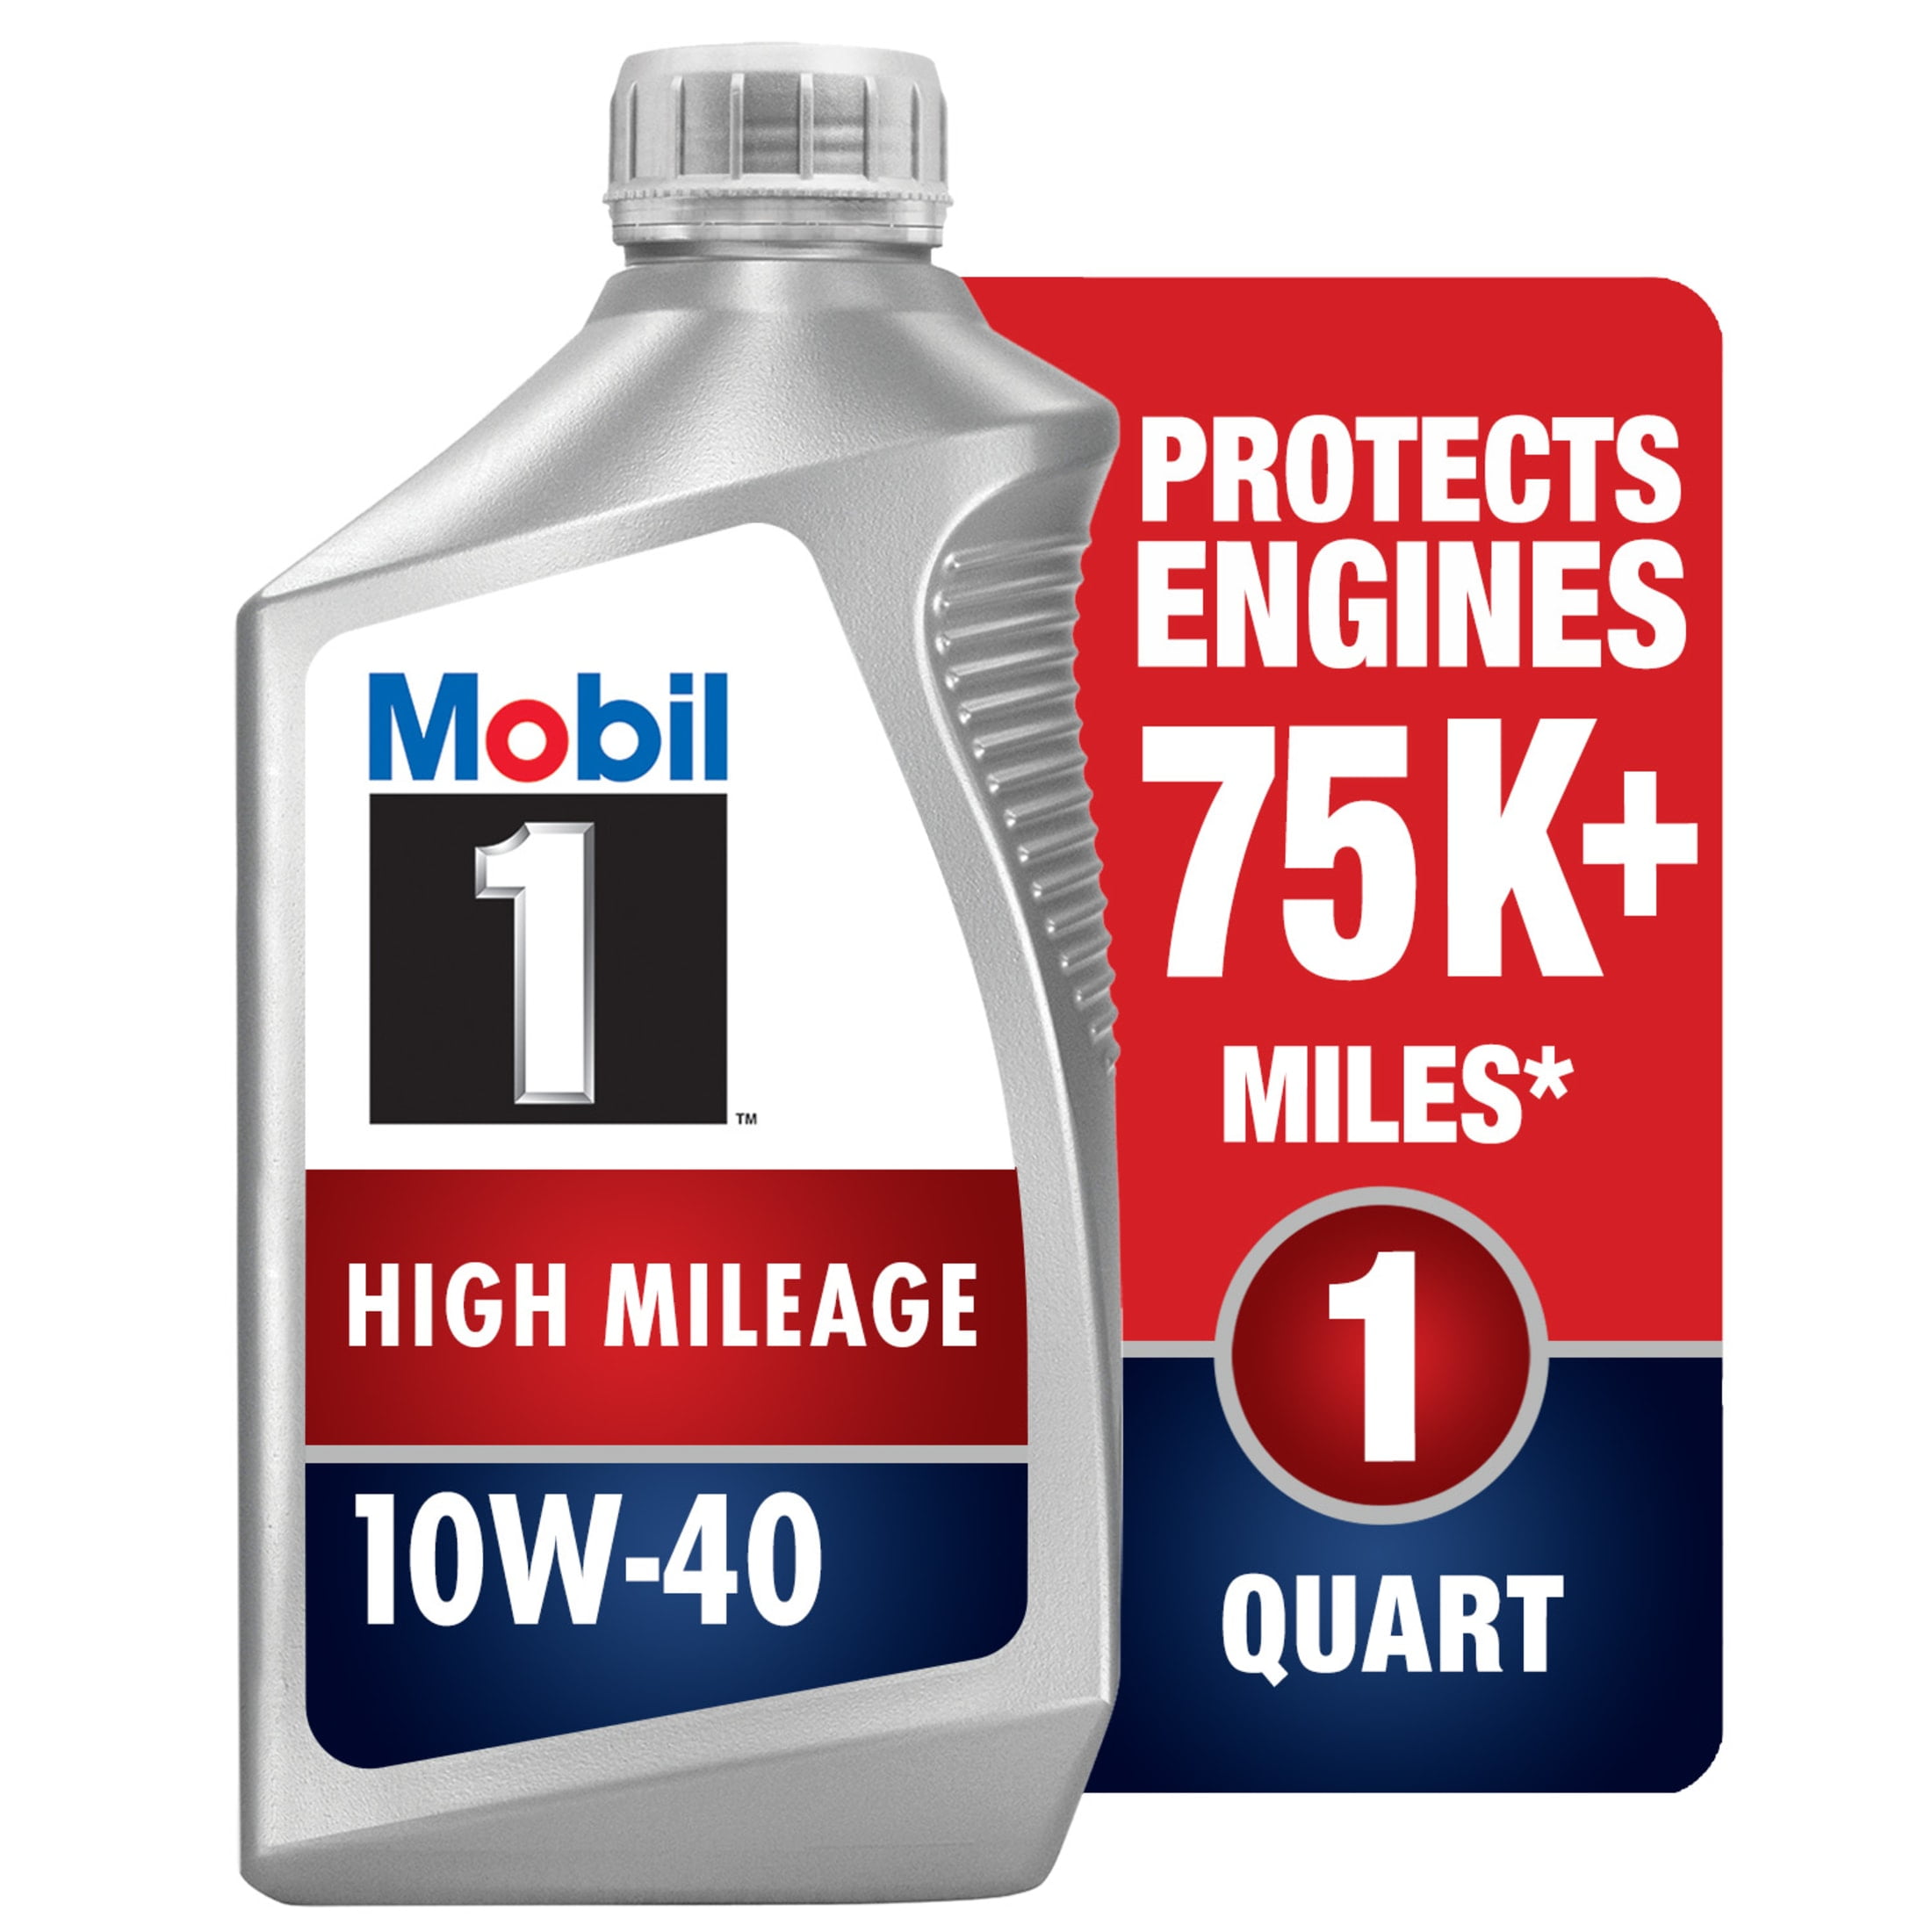  Mobil 1 10W-40 aceite de motor de alto millaje - 1/4 galón :  Automotriz